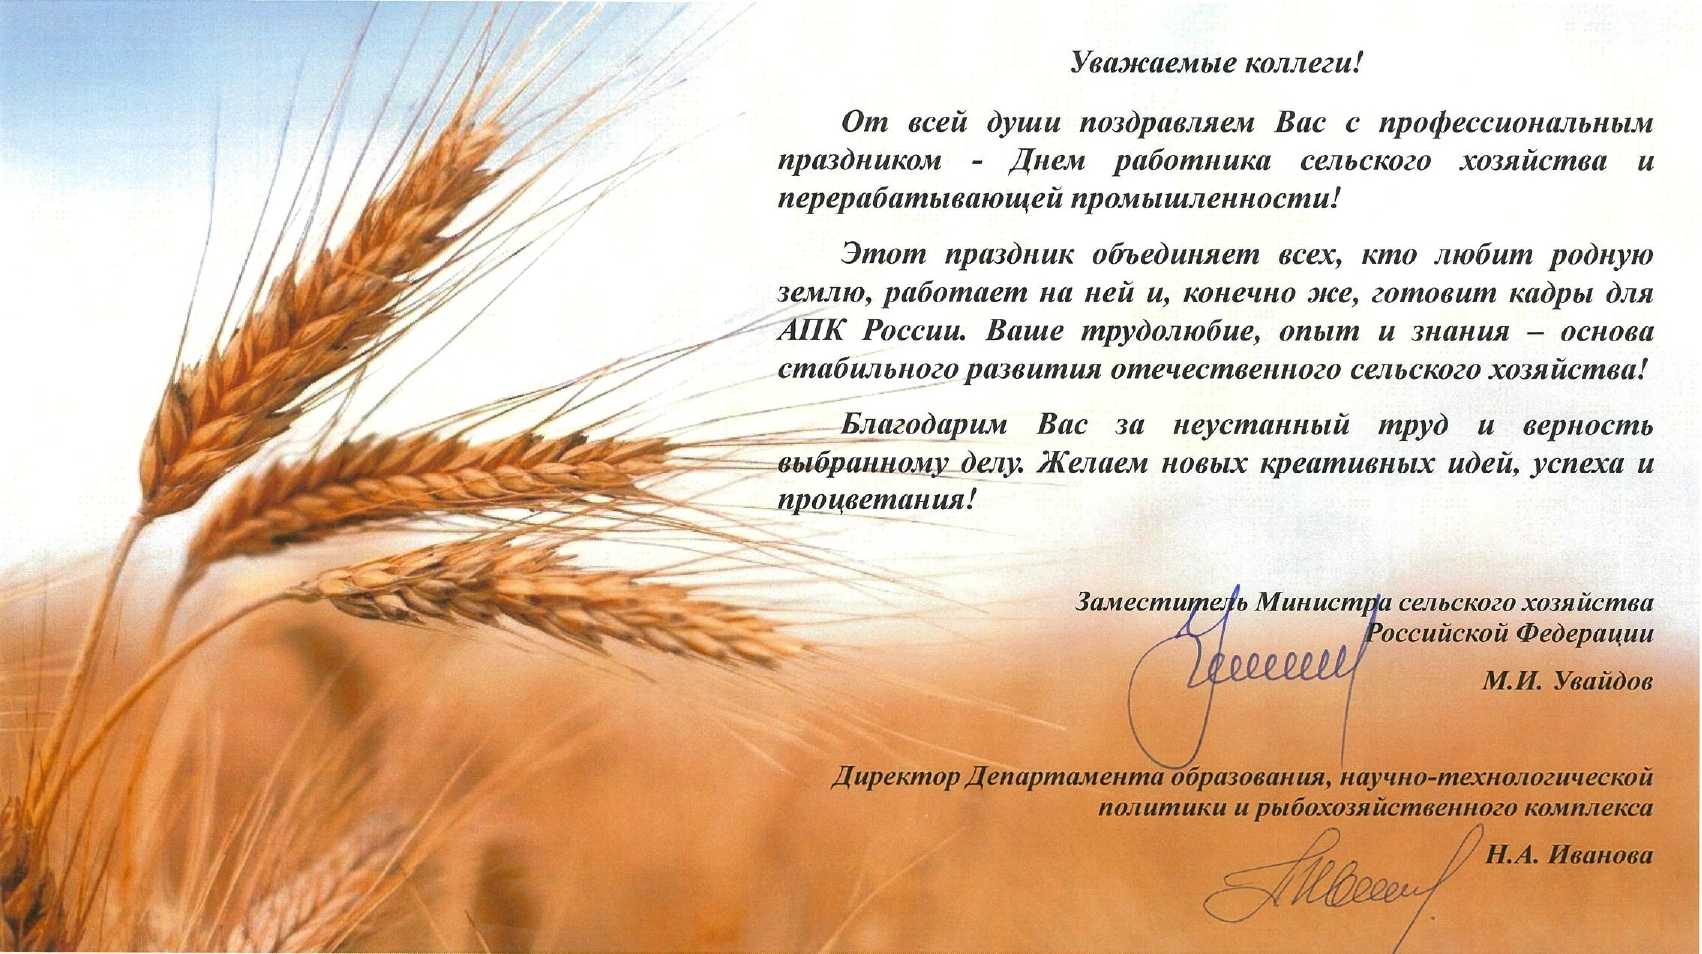 Поздравления с днем работника сельского хозяйства 11 октября 2020 в стихах, прозе